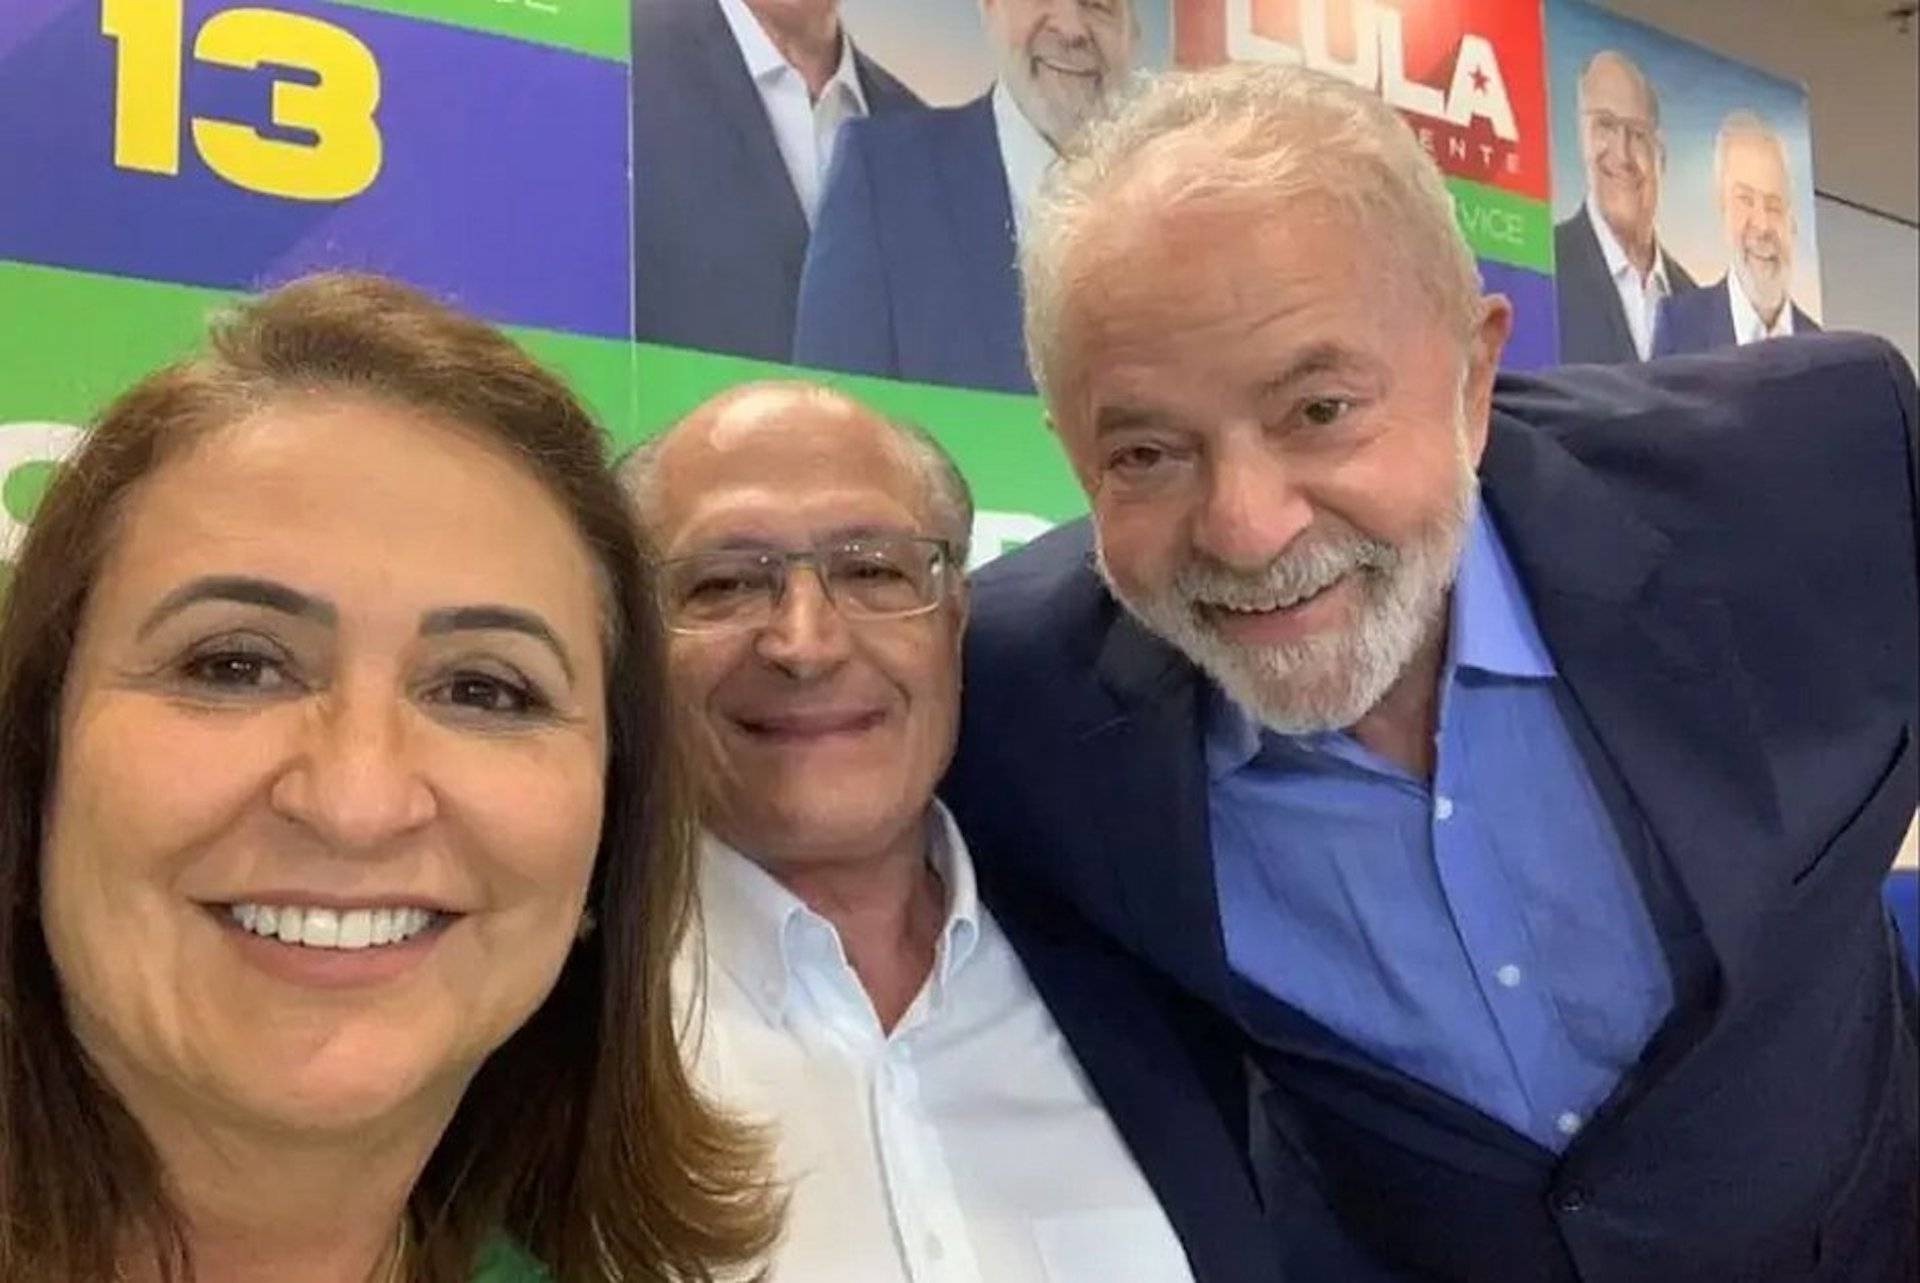 Apoio de Kátia Abreu a Lula revela divisão política entre representantes do agronegócio